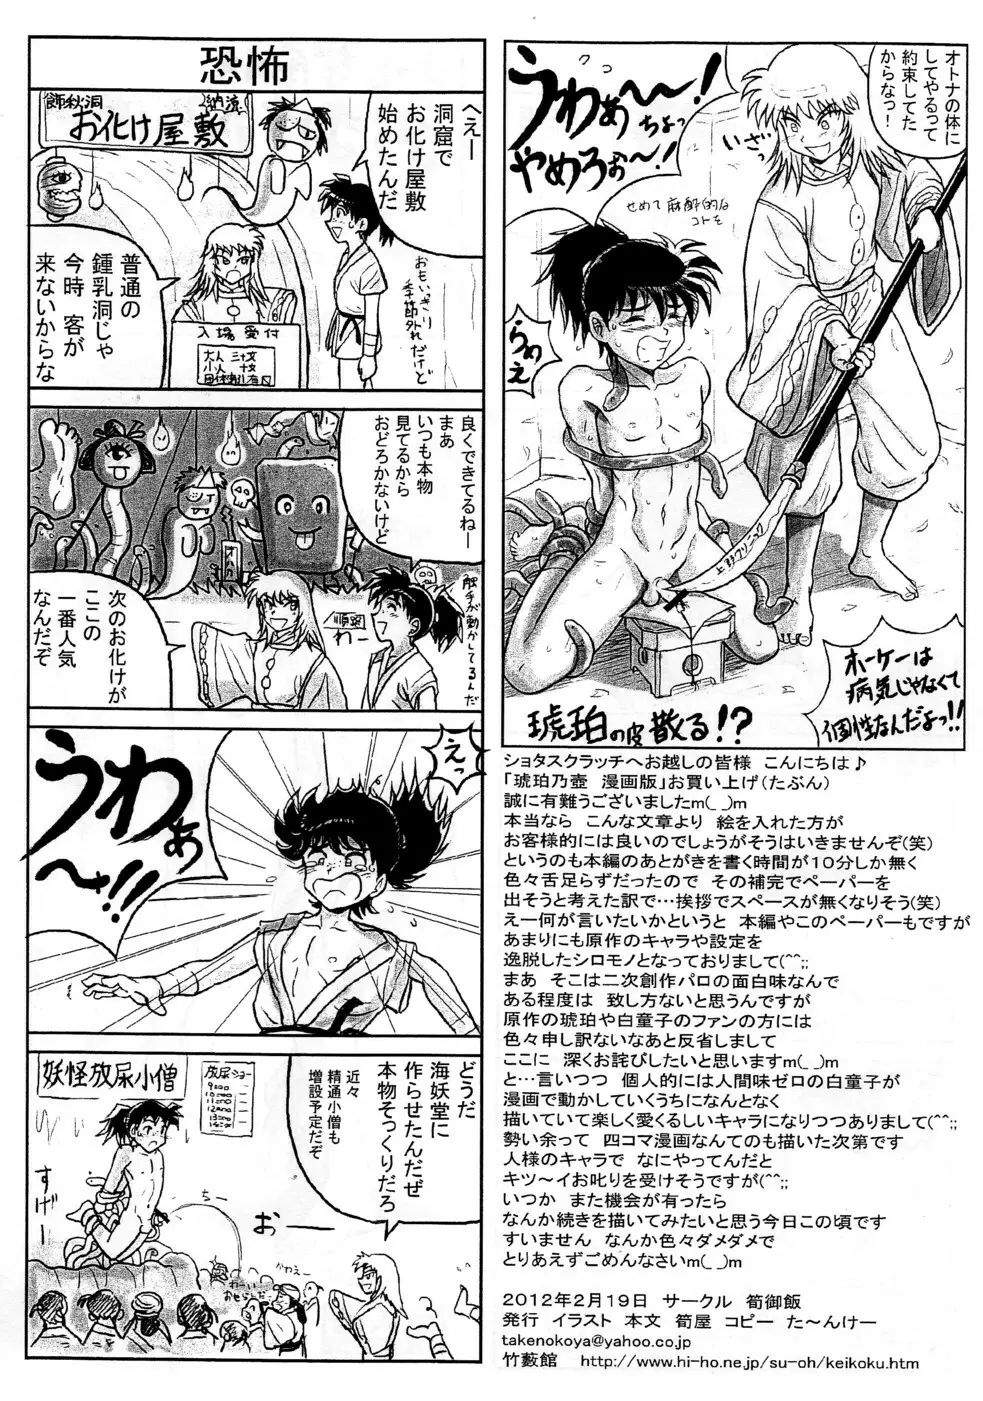 Takenokoya – Kohaku no Tsubo Manga Ban 6ページ